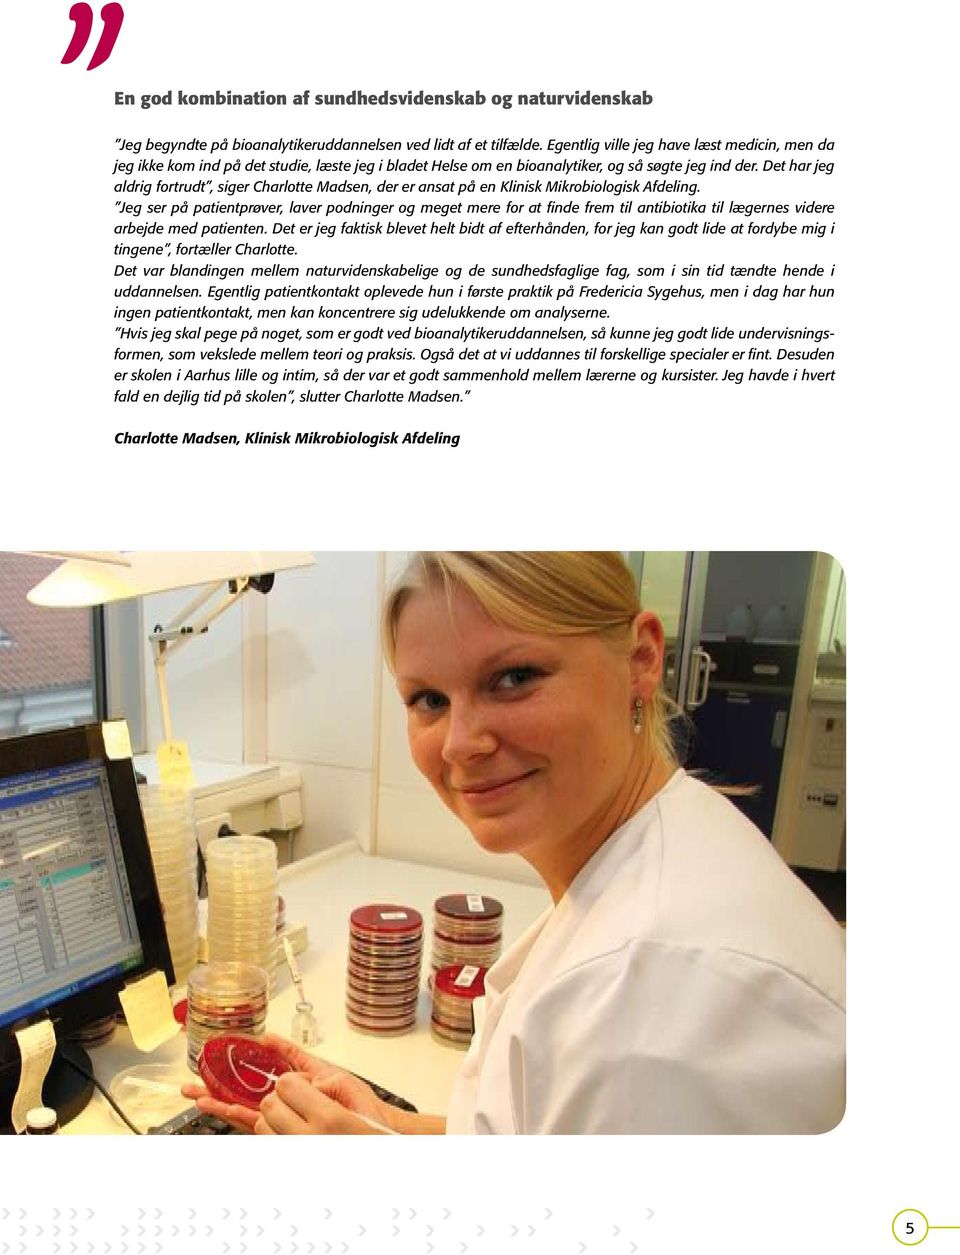 Det har jeg aldrig fortrudt, siger Charlotte Madsen, der er ansat på en Klinisk Mikrobiologisk Afdeling.